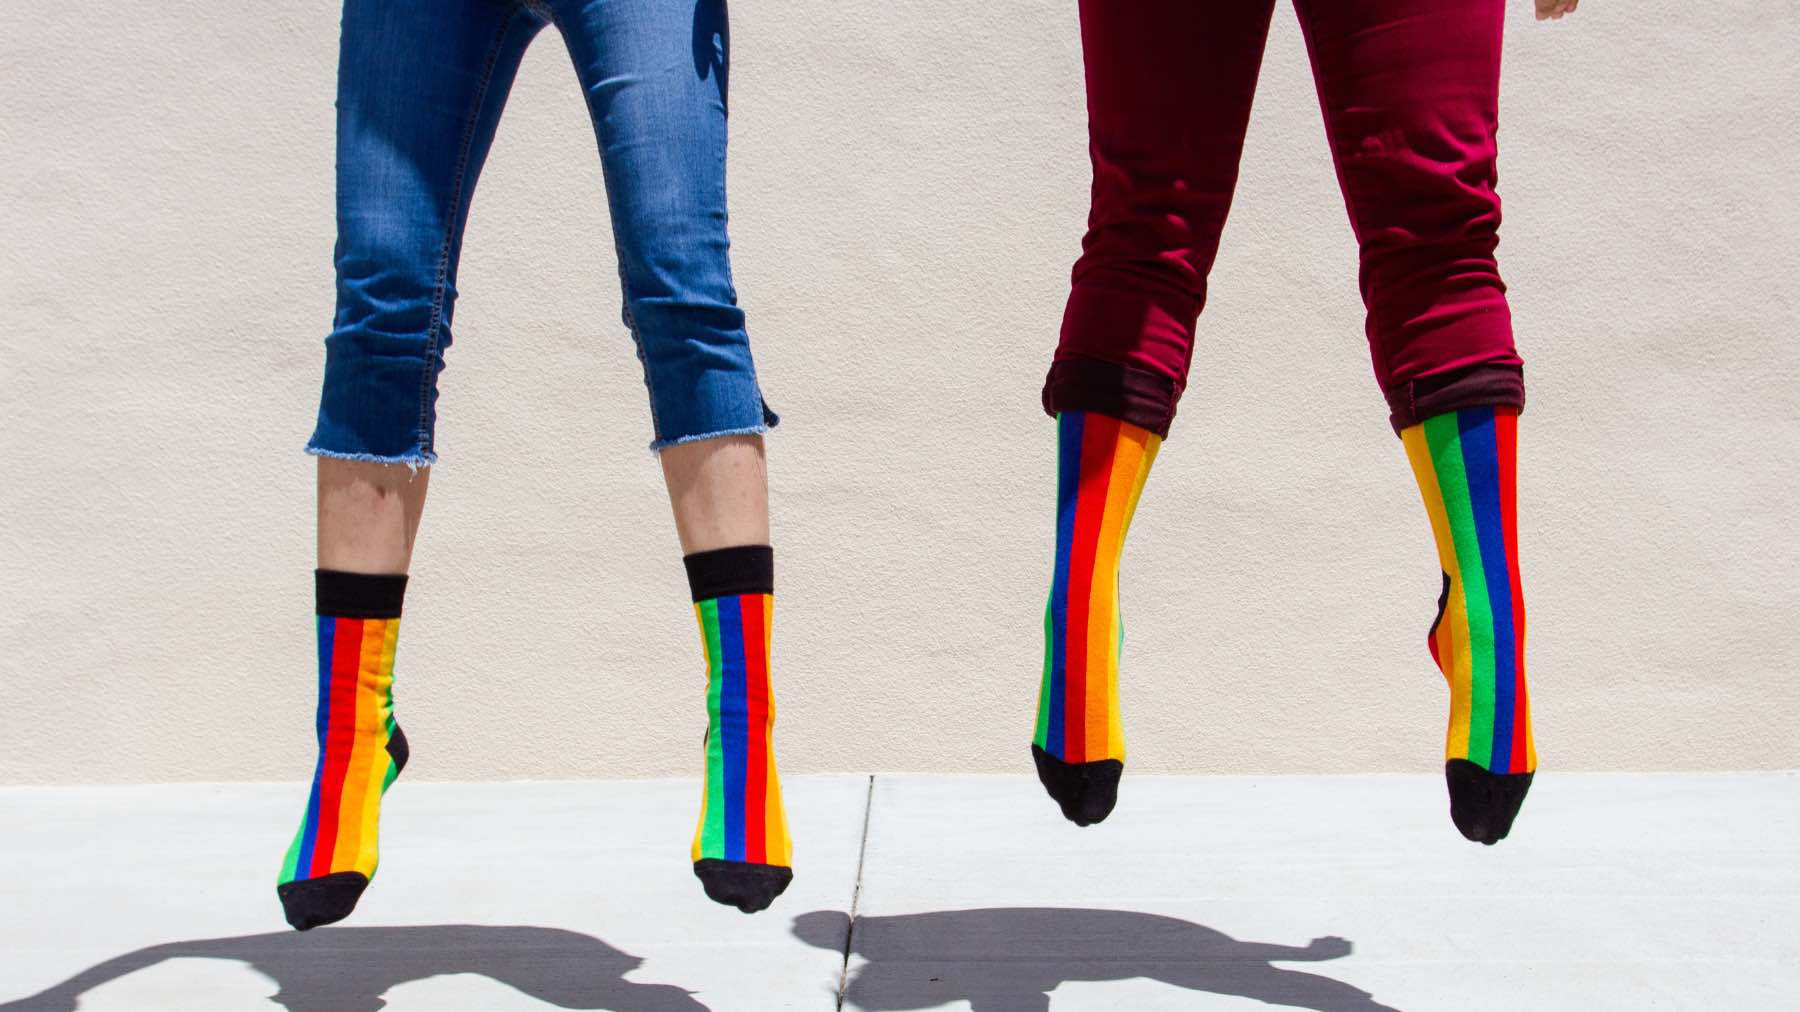 Pride rainbow socks jumping 